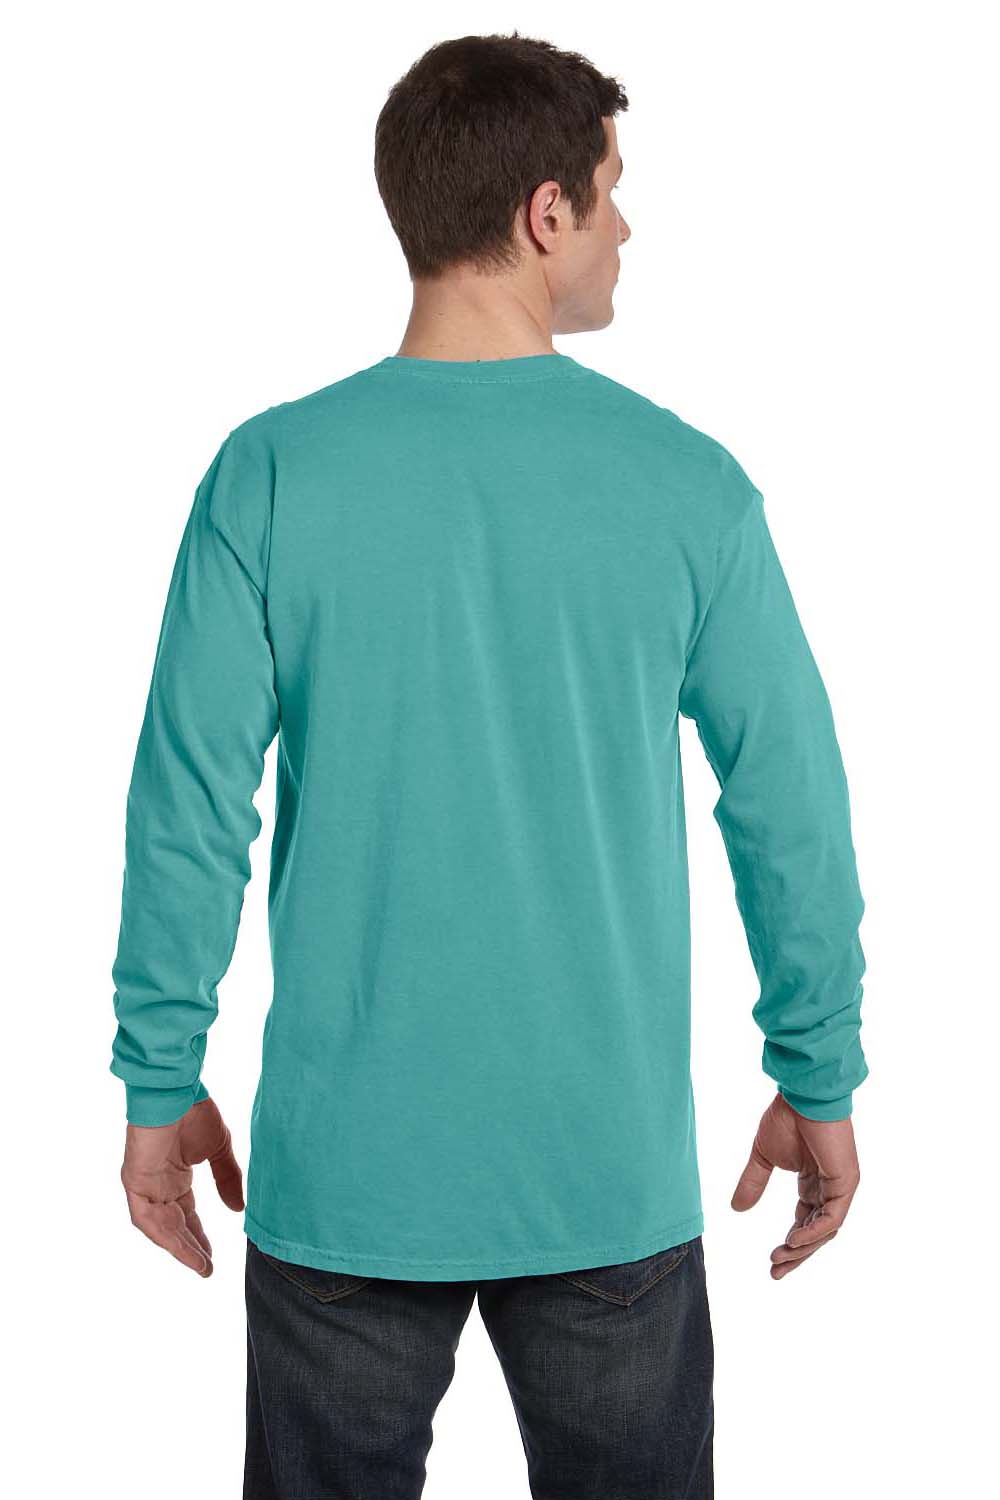 Comfort Colors C6014 Mens Long Sleeve Crewneck T-Shirt Seafoam Green Back